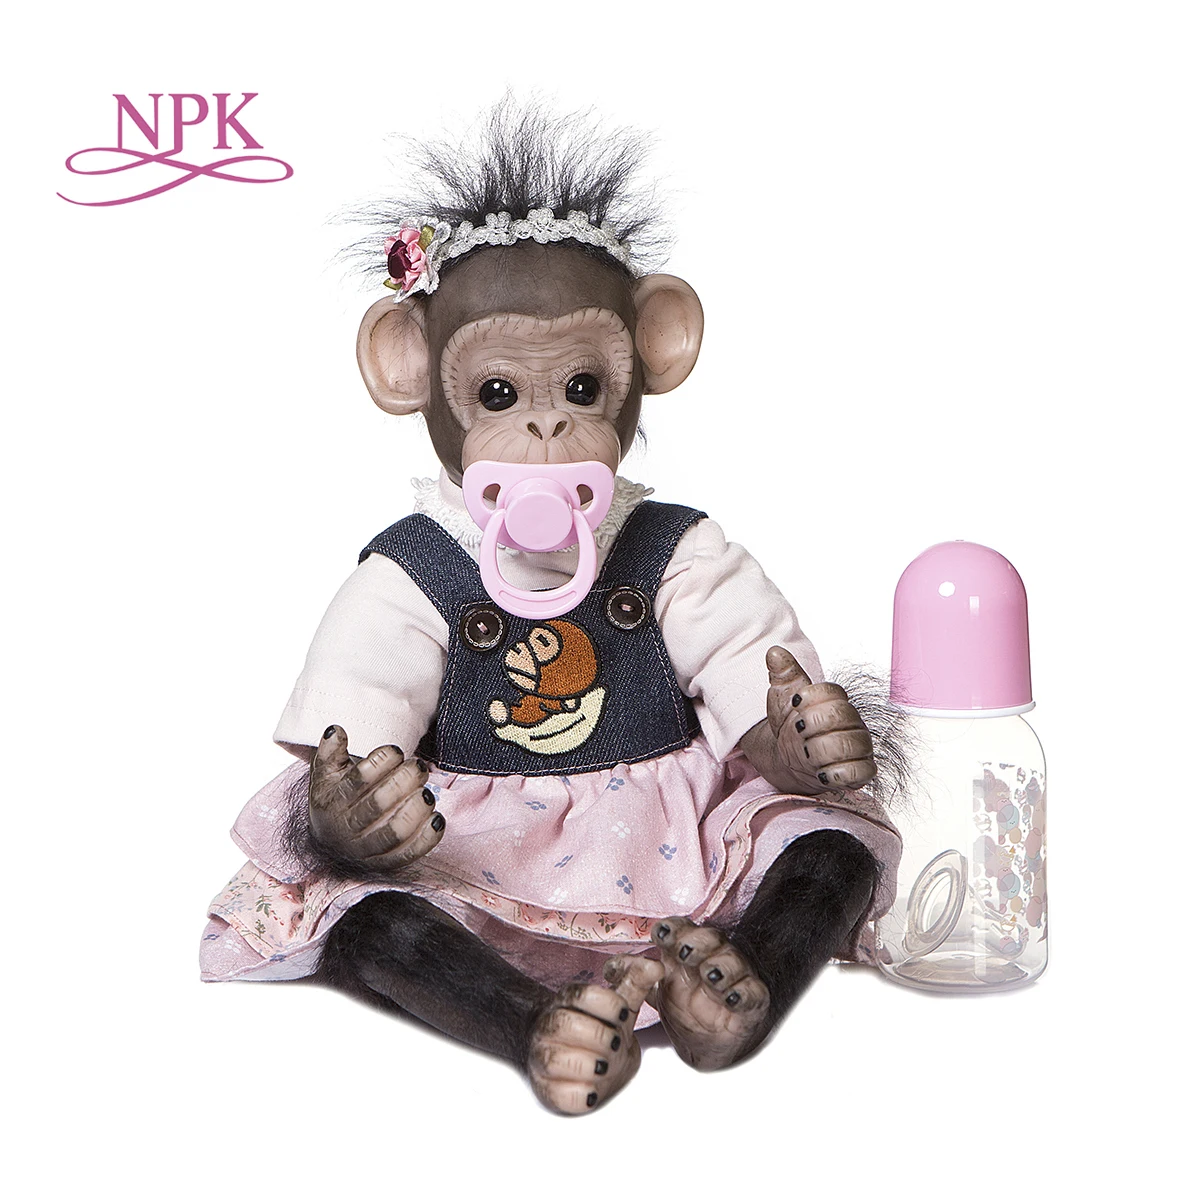 NPK 40 СМ Милая Кукла Reborn Baby Orangutans Ручной Работы Детальная Роспись Премиального Размера Черная Обезьяна Коллекционная Художественная Кукла Высокого Качества